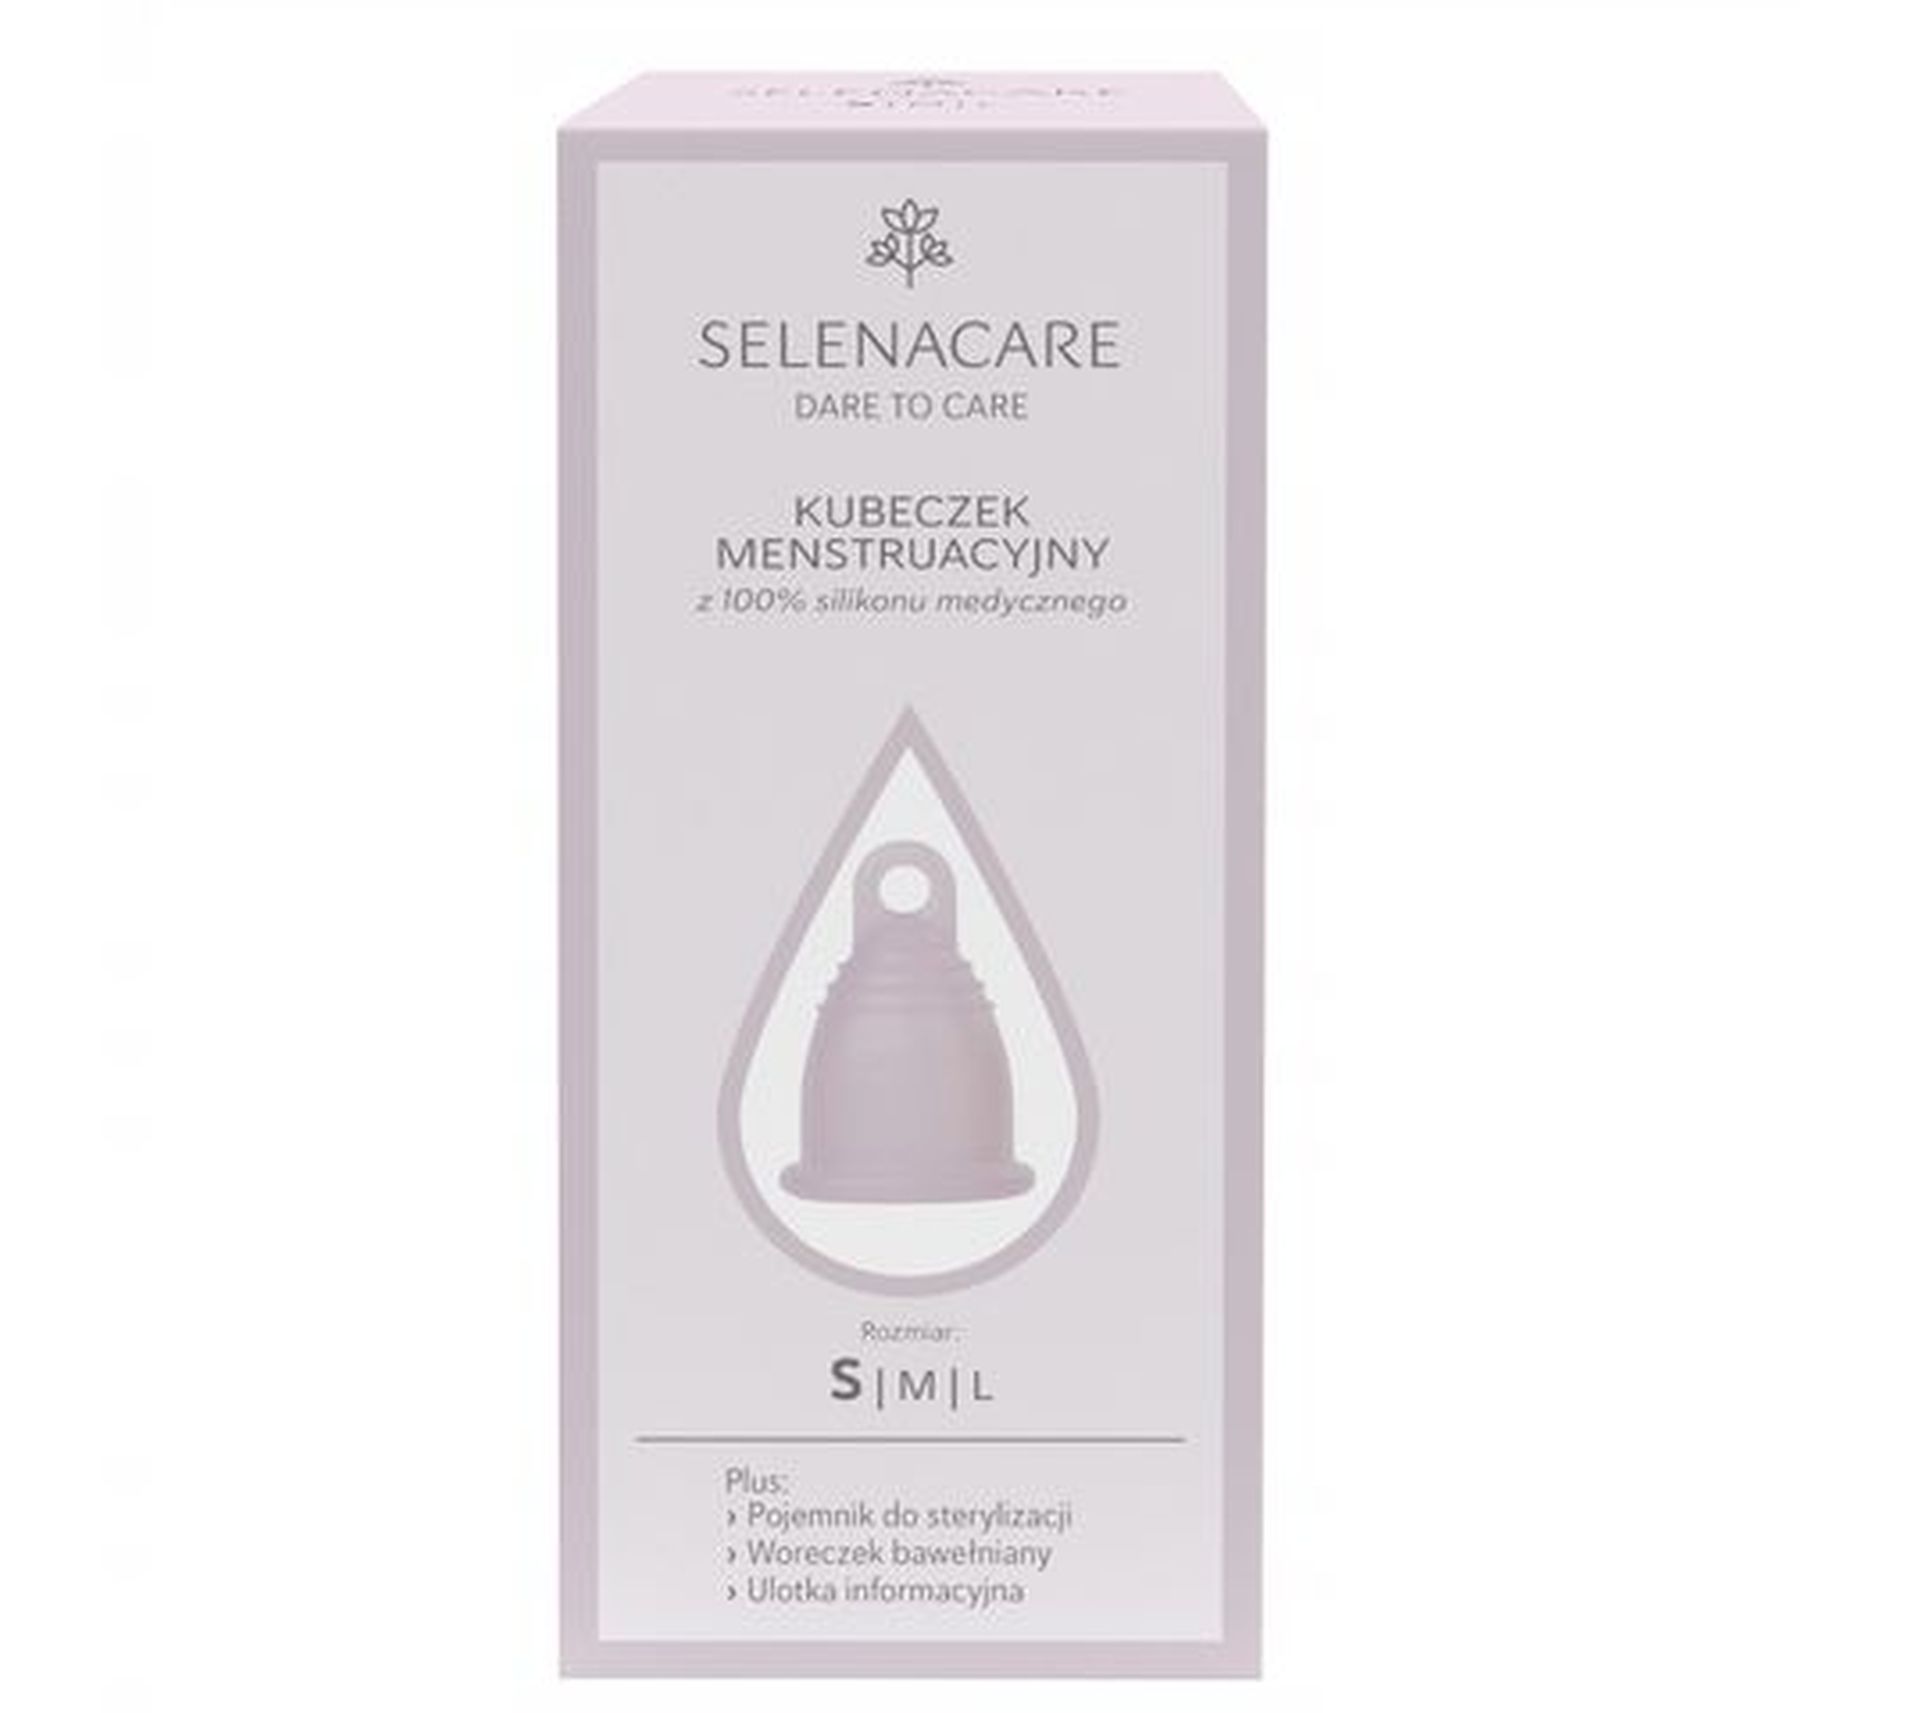 Selenacare Premium kubeczek menstruacyjny z silikonu medycznego S